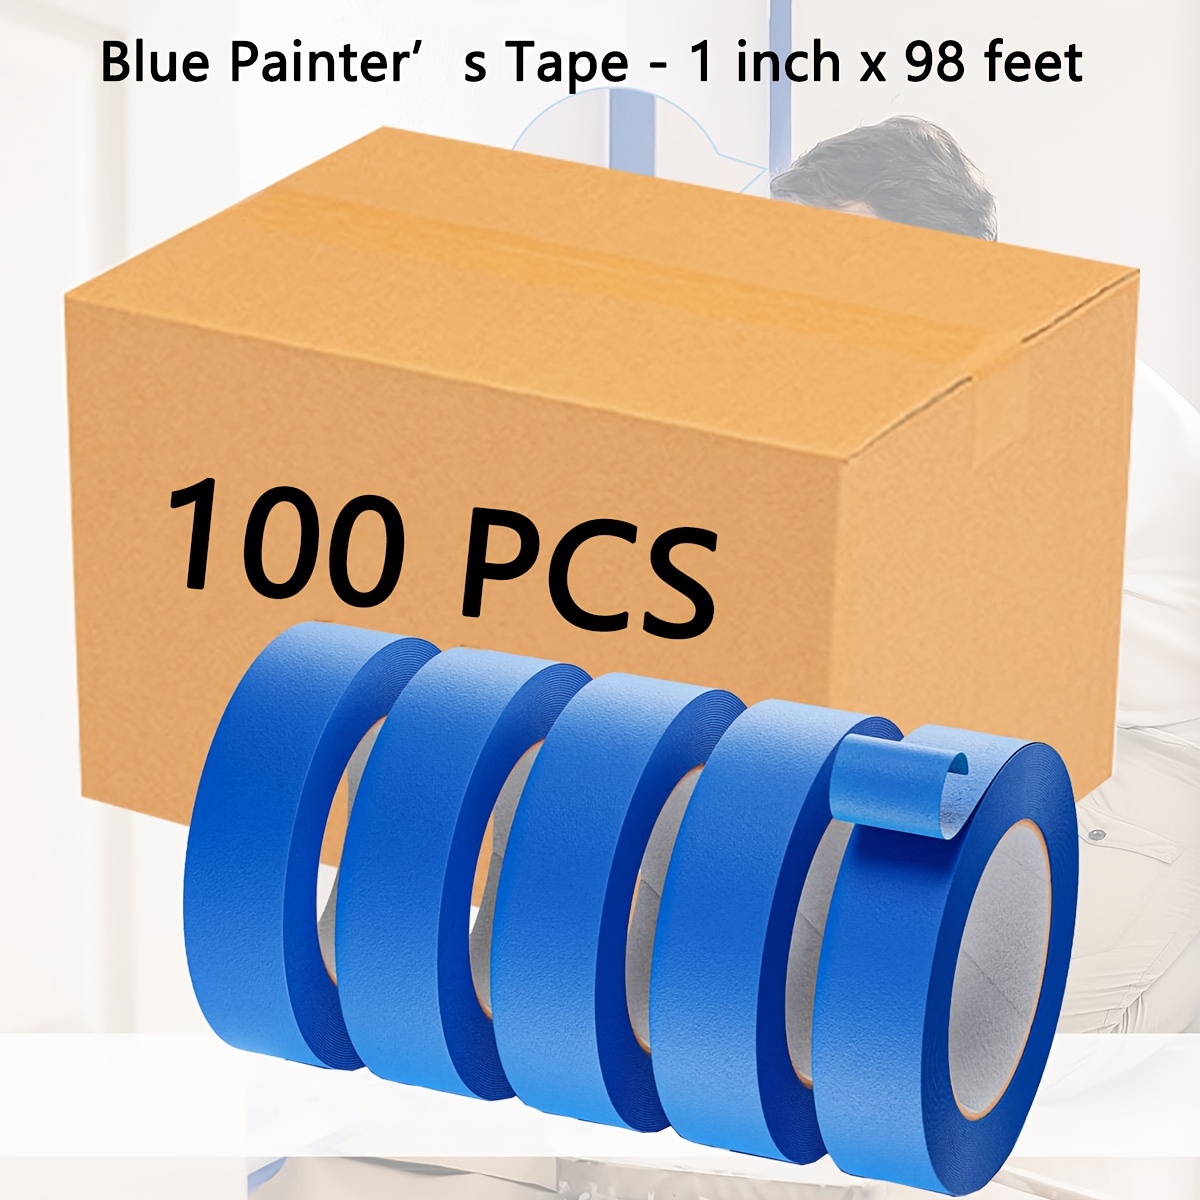 La mejor cinta azul para pintar paredes 1 pulgada 2 pulgadas 4 pulgadas